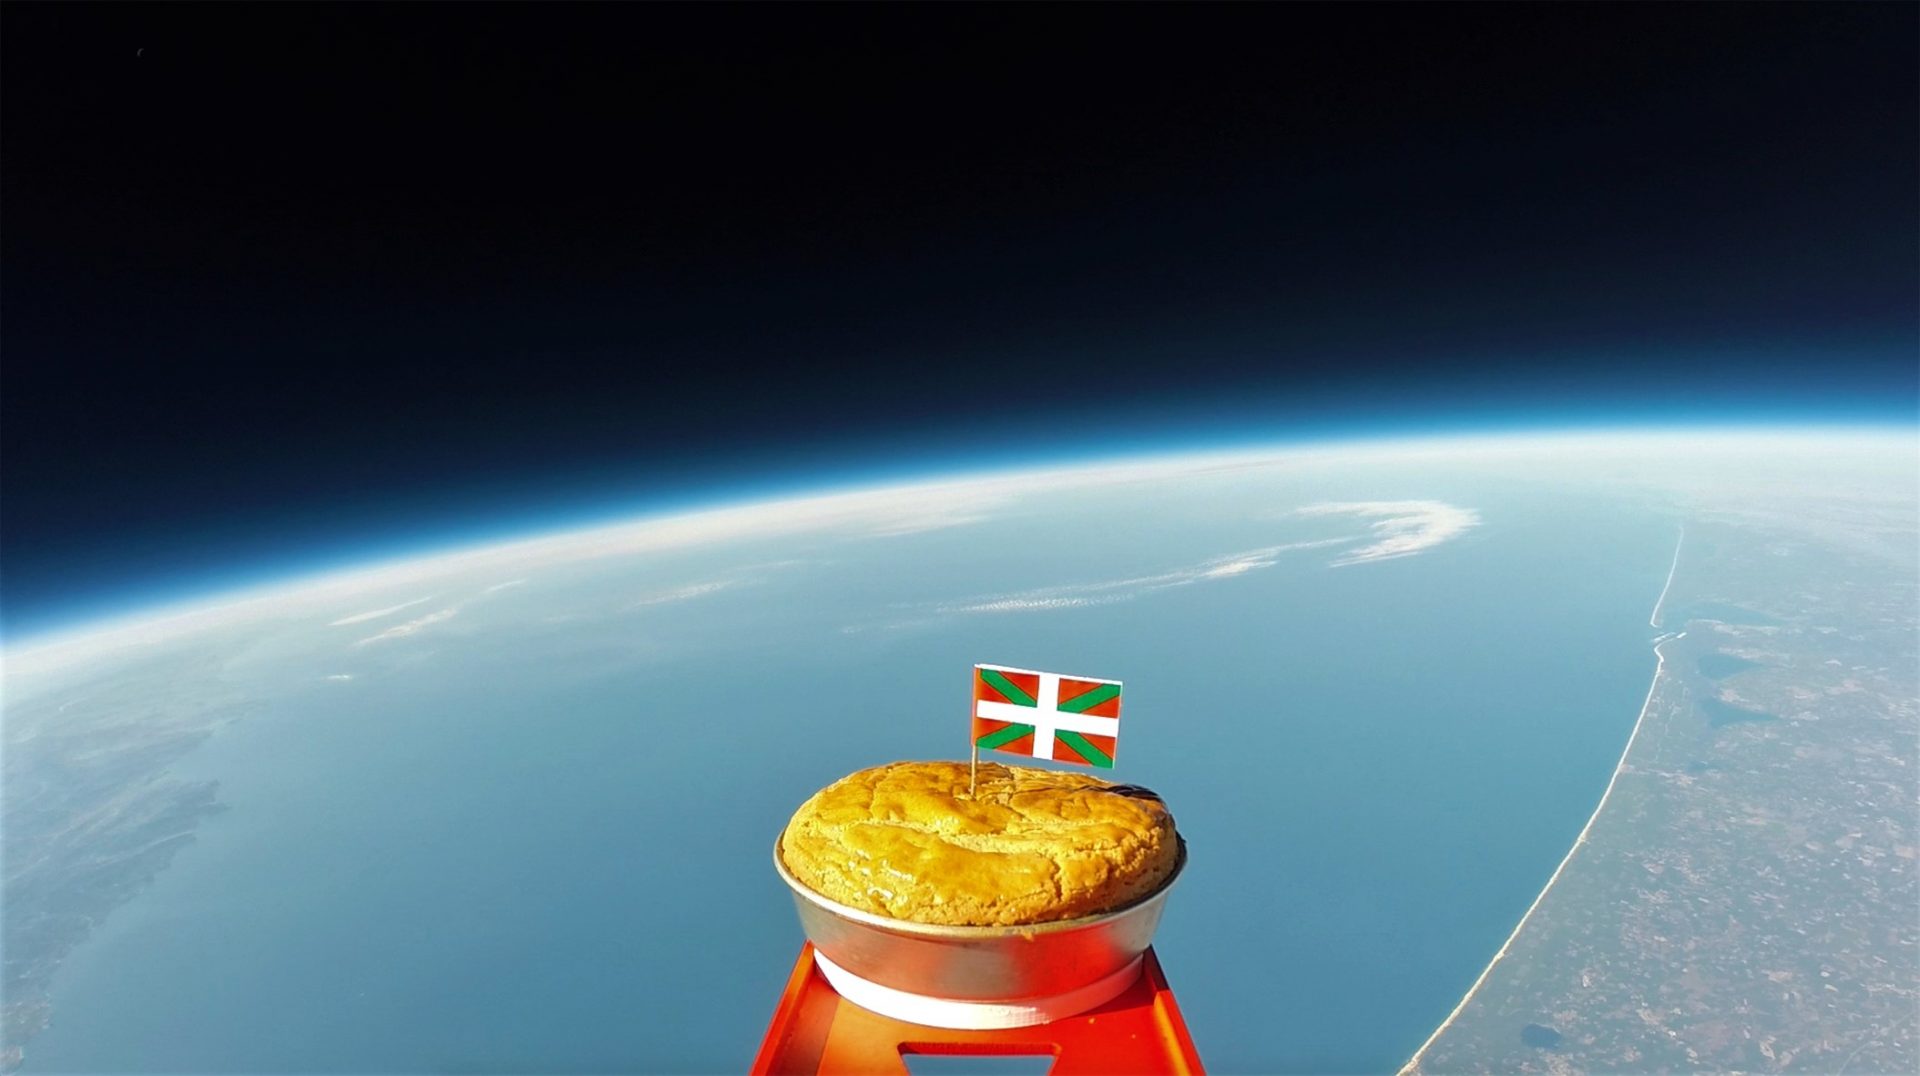 Gâteau basque à 38 kms d'altitude